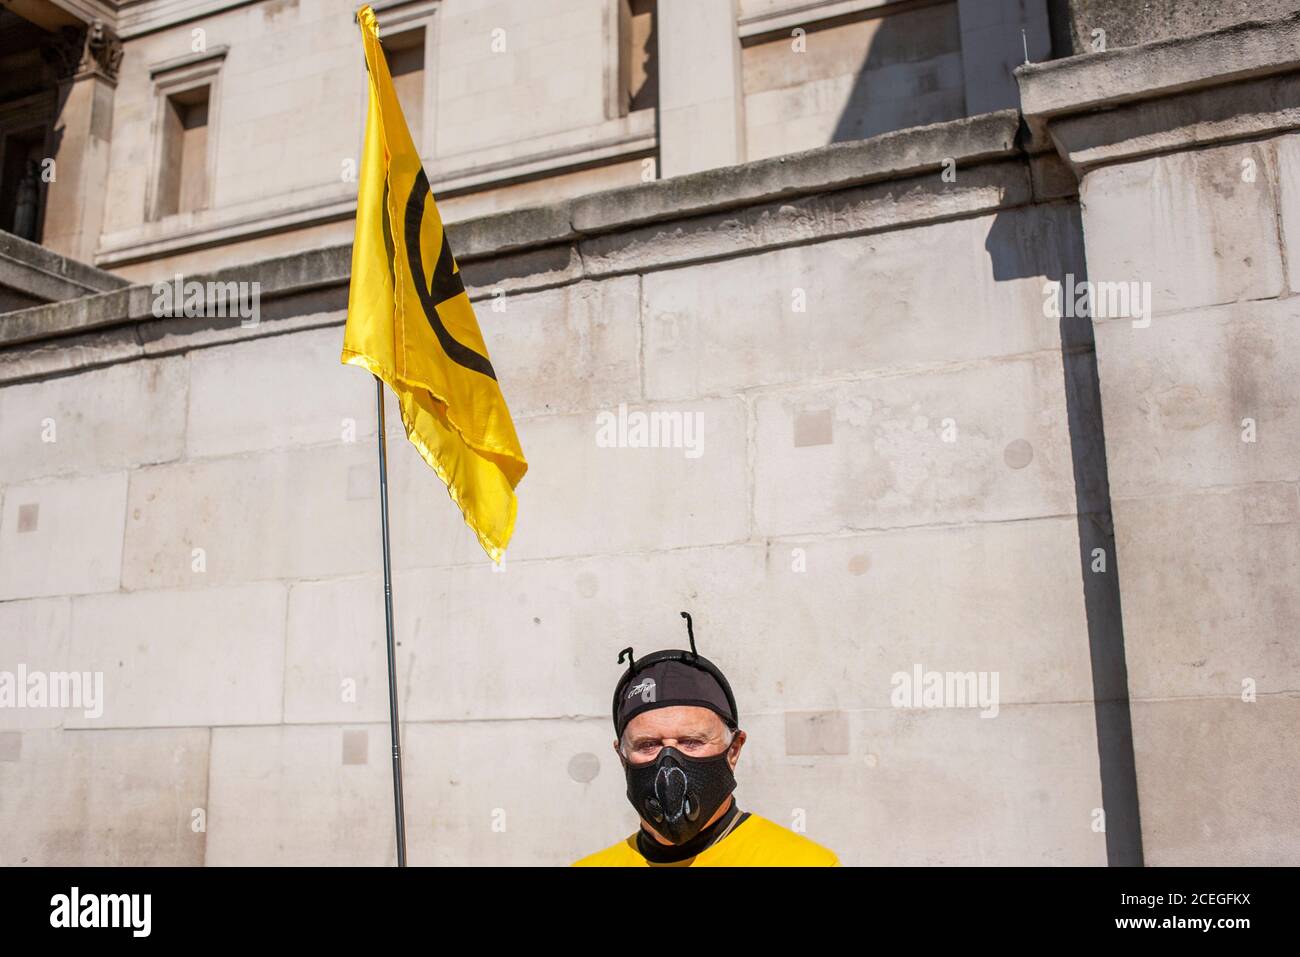 Extinction Rébellion protestant vêtu d'un costume jaune et noir posant pour un portrait à Trafalgar Square, Londres, Royaume-Uni. Banque D'Images